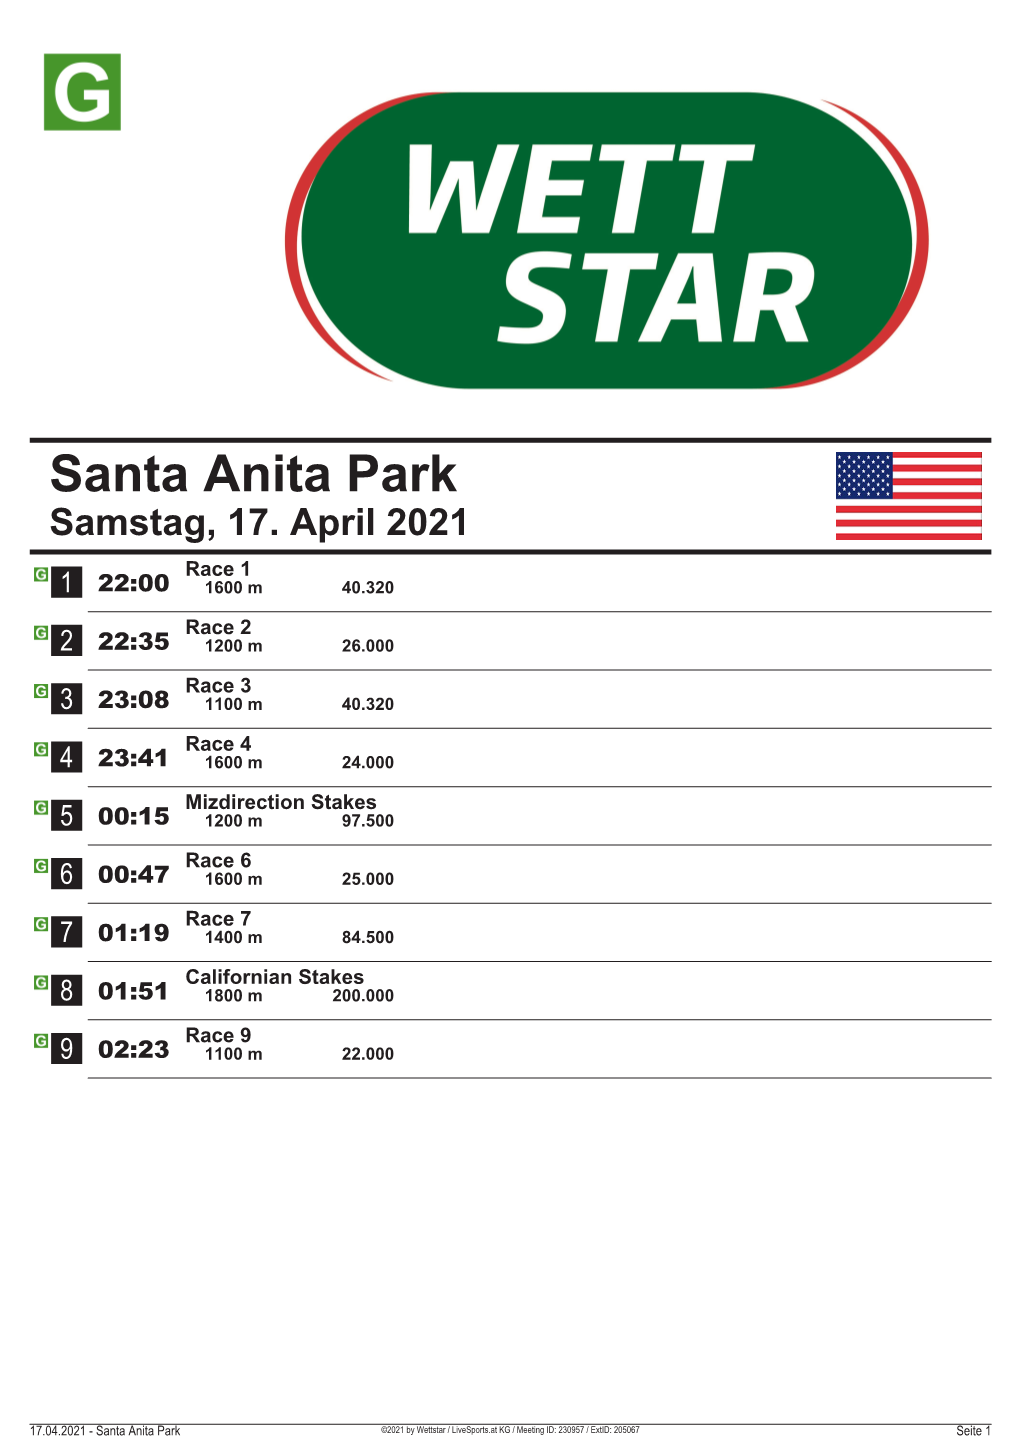 Santa Anita Park Samstag, 17